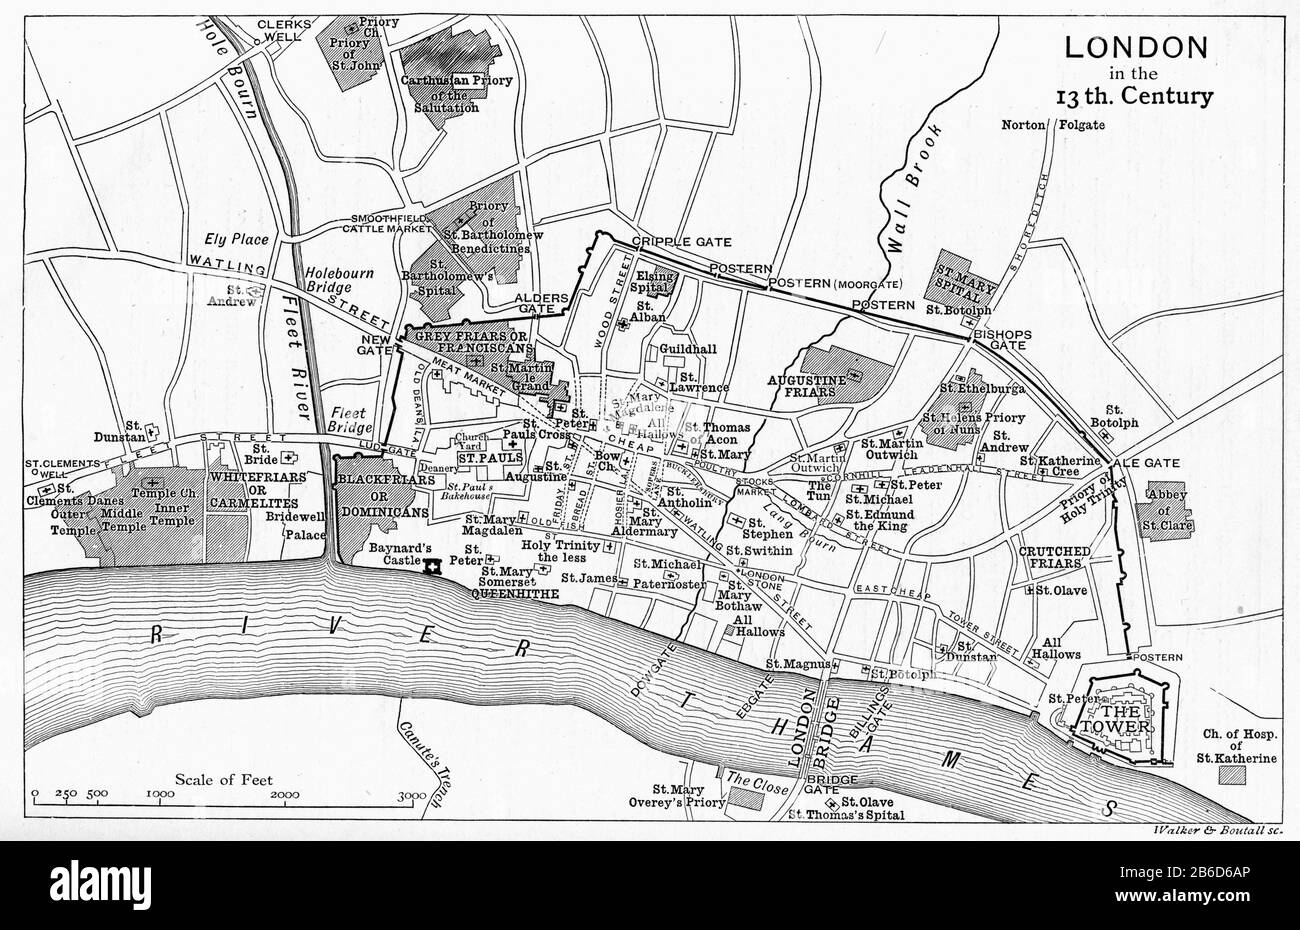 Una mappa di Londra nel 13 ° secolo. Nel Medioevo, Westminster era una piccola città sul fiume dalla City di Londra. Dal XIII secolo Londra crebbe in due parti diverse. Westminster divenne la capitale reale e il centro del governo, mentre la City di Londra divenne il centro del commercio e del commercio, una distinzione che è ancora evidente a oggi. Foto Stock